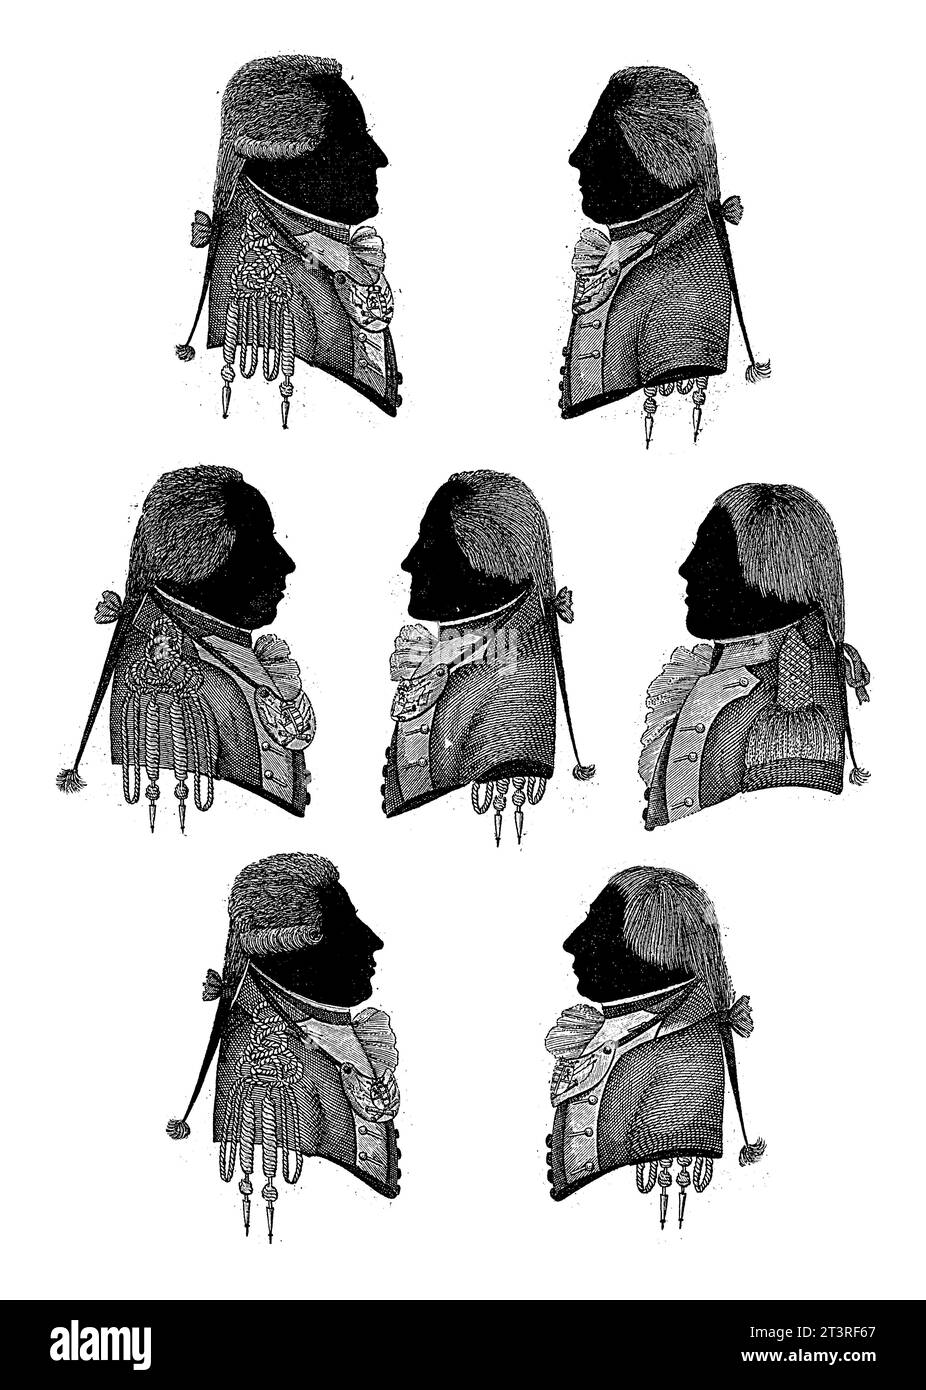 Portraits de silhouettes de J.L.E. Scheppern, C.L. Teutscher von Liesfeld, G.H. von Nitzswitz, J.A. Brendel, J.J. Colthoff, C.T.A. Alberti et J. Kroon, A. Banque D'Images